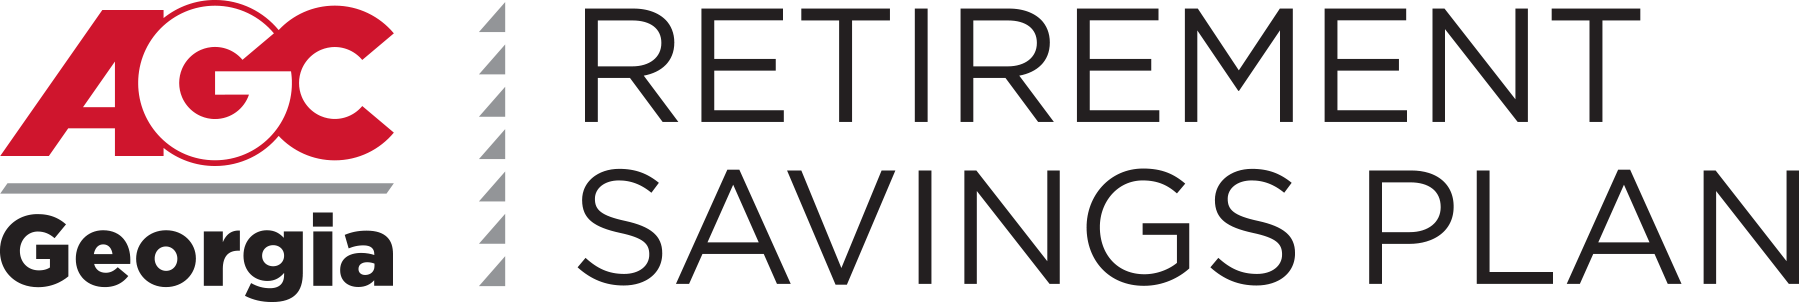 AGC Retirement Savings Plan  logo